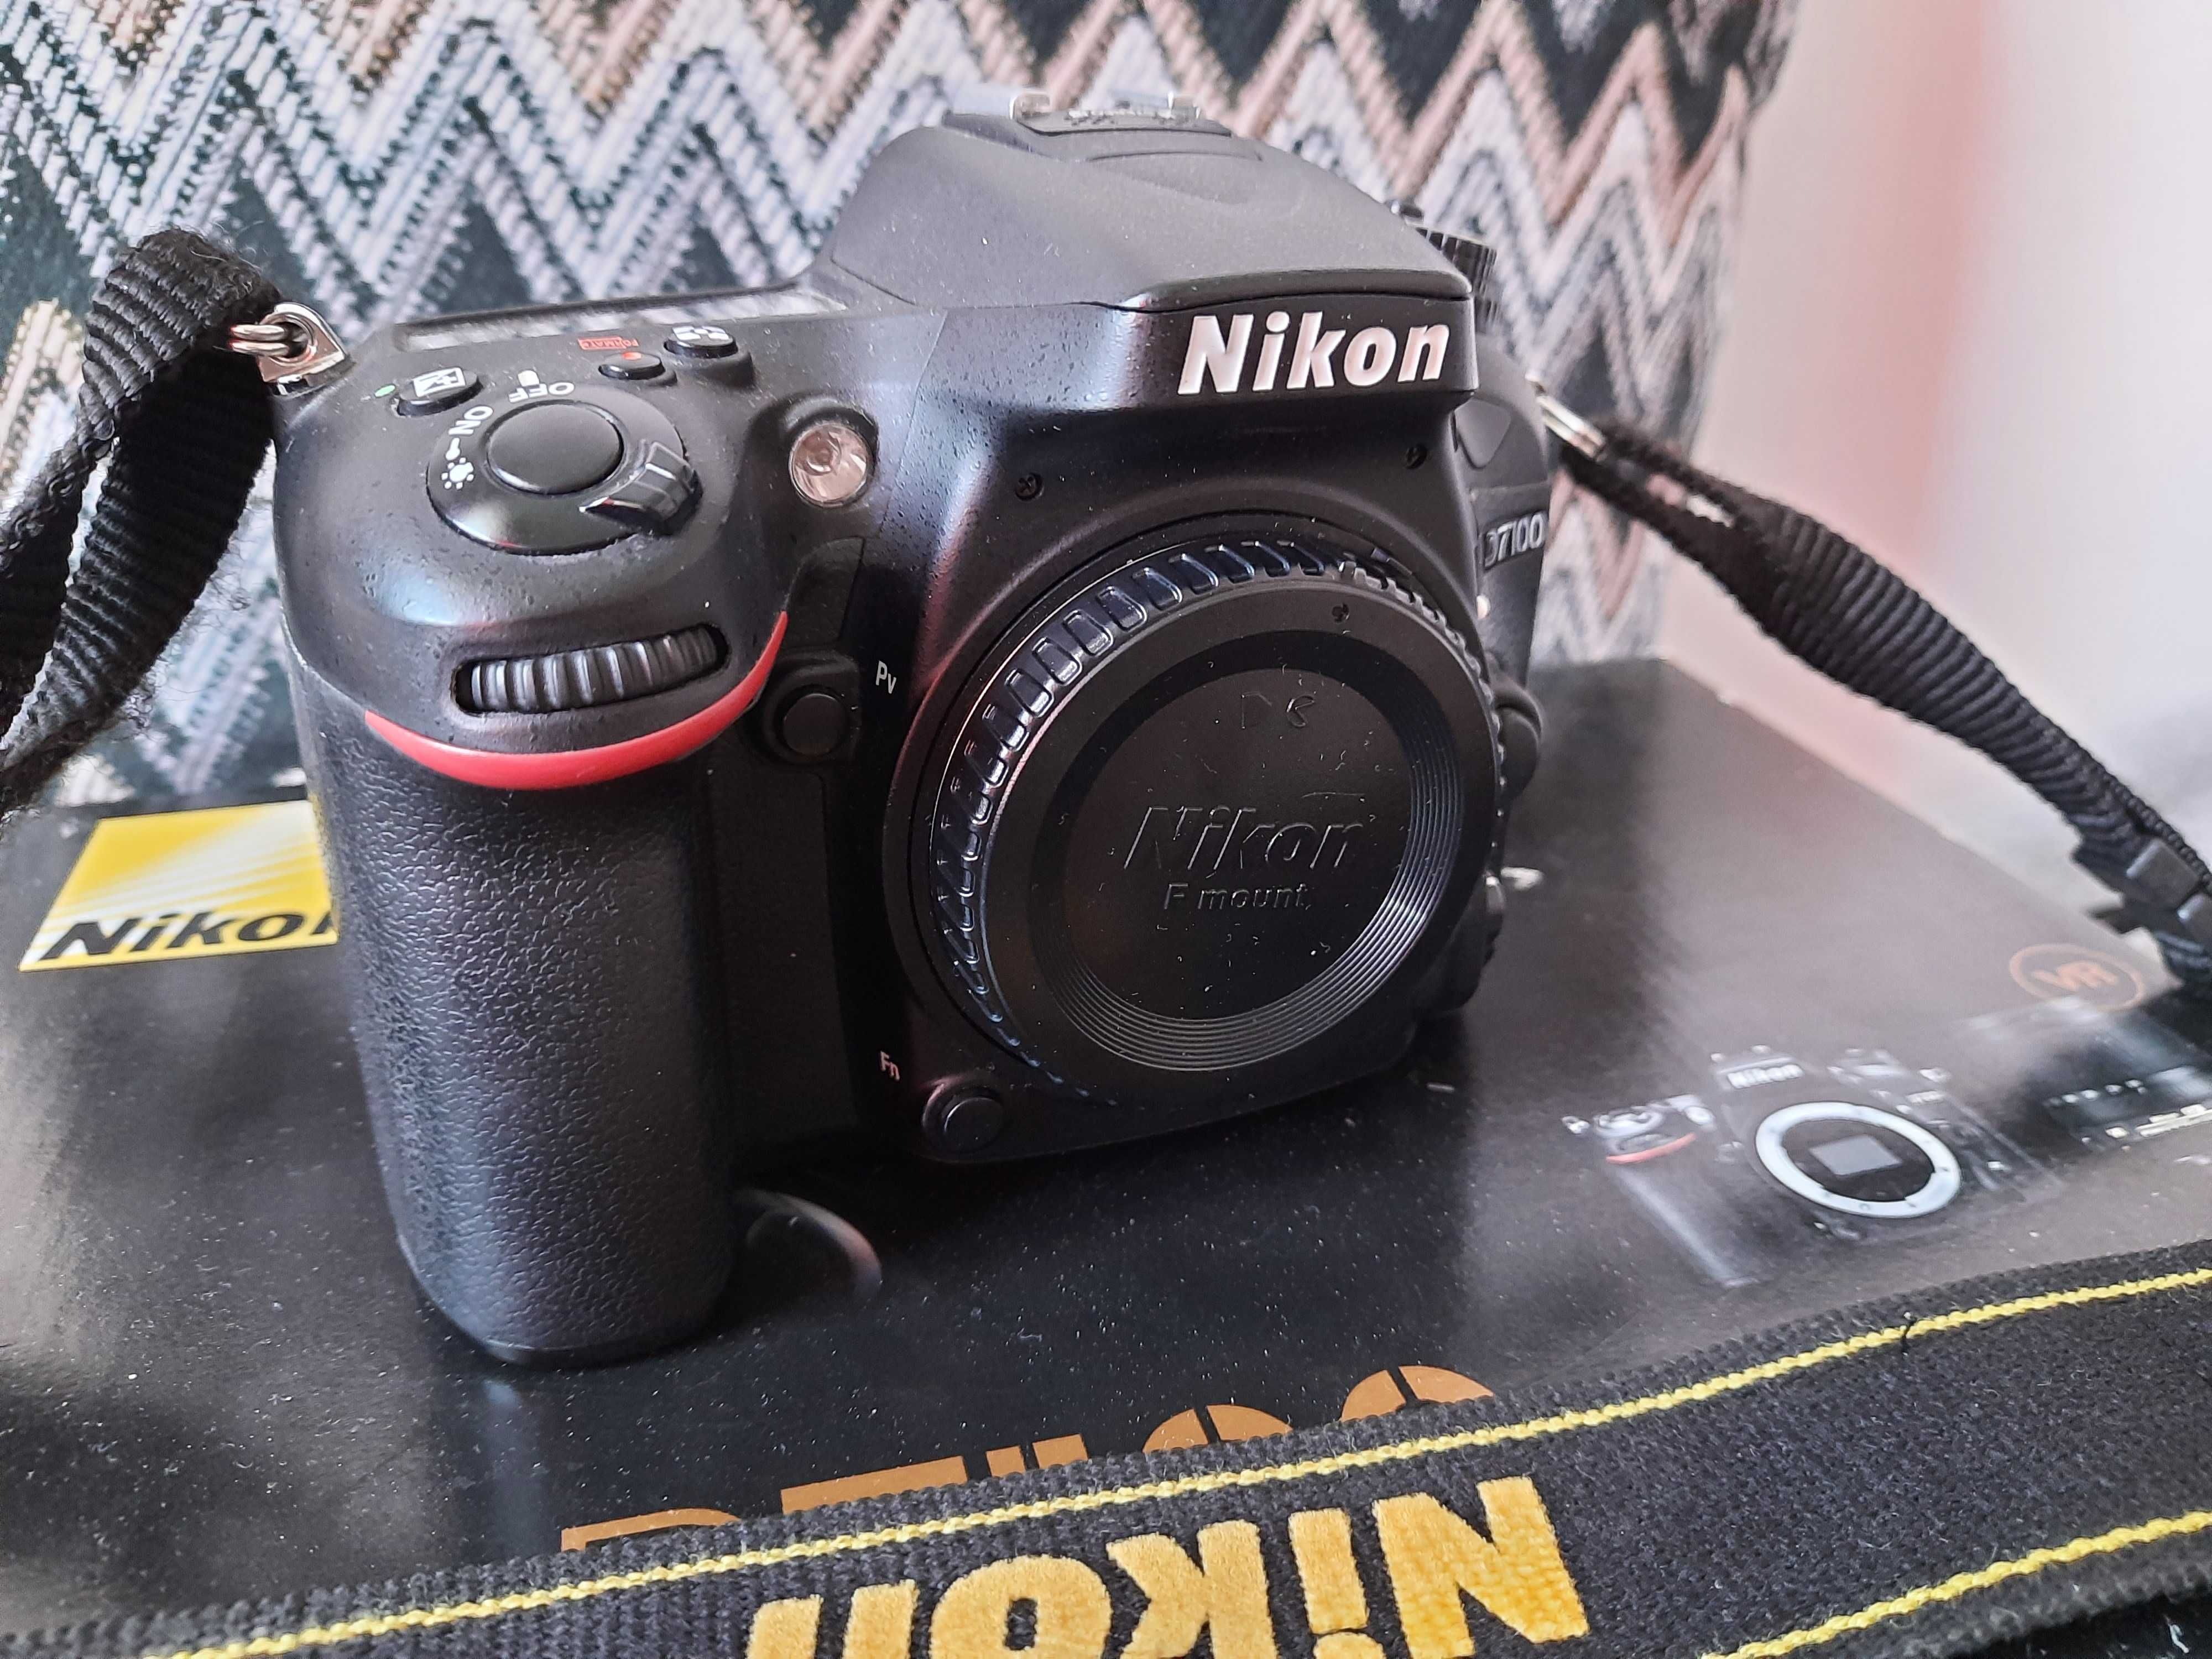 Lustrzanka Nikon D7100 + obiektyw + dodatki ( blenda, pokrowiec )